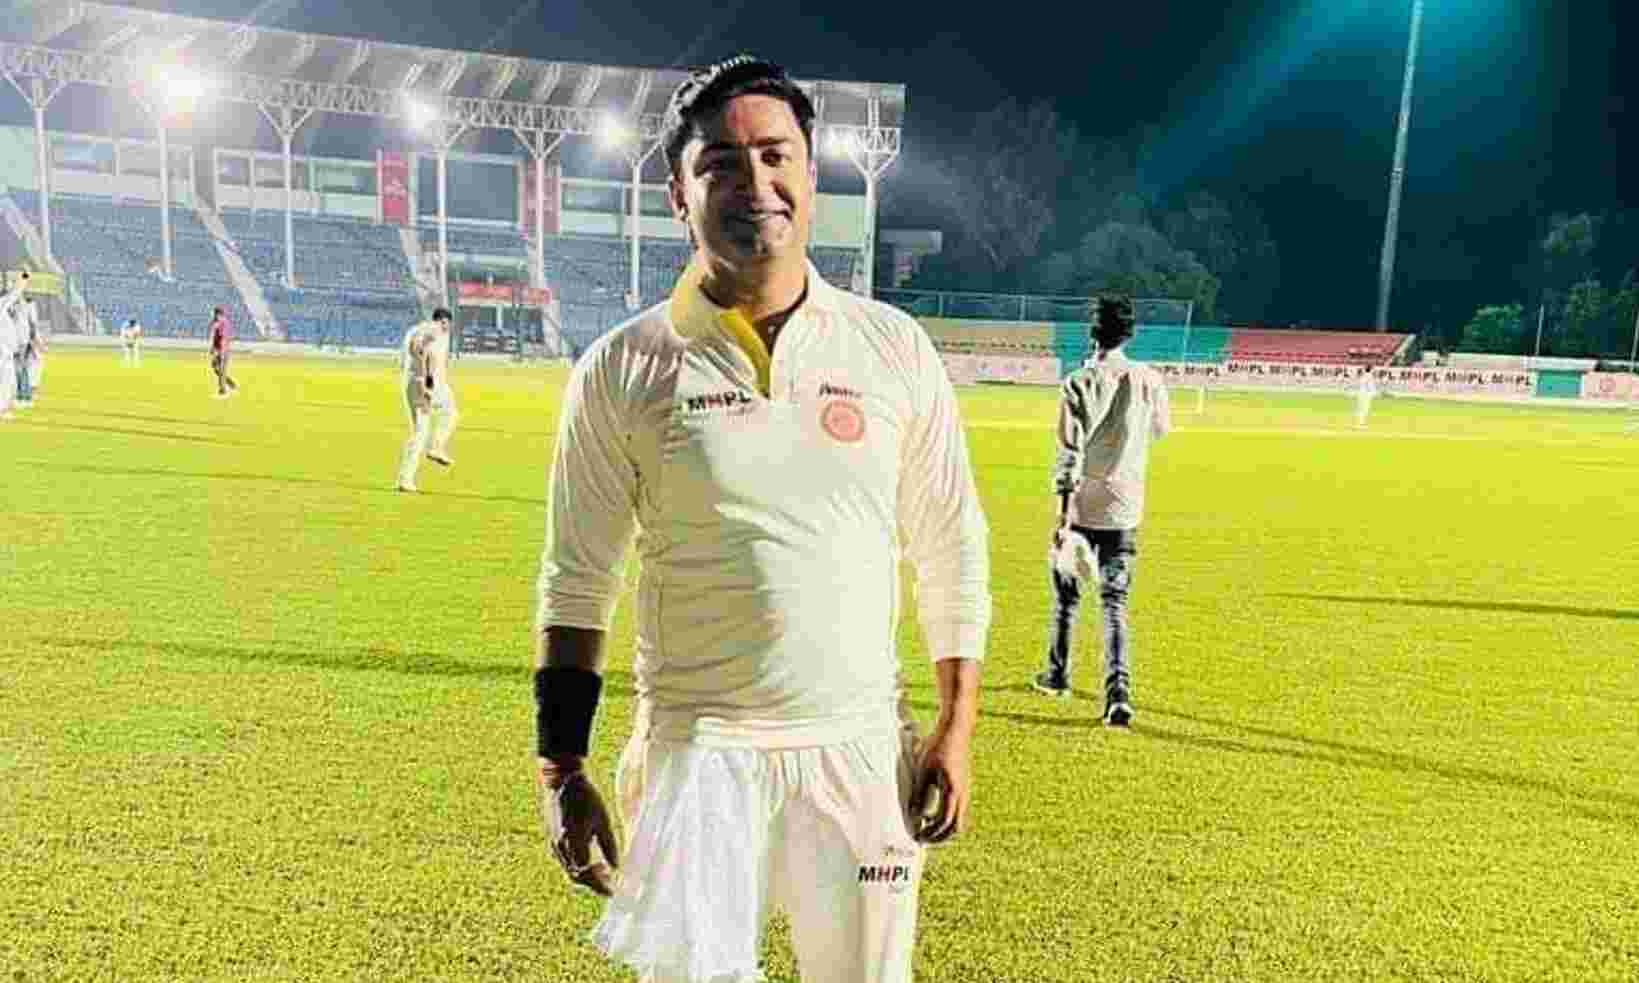 Kanpur News : अपनी विधानसभा में एक साथ 26 मौतें होने के बावजूद Greenpark में क्रिकेट खेलते रहे BJP-MLA सांगा, लोग बोले शर्मनाक